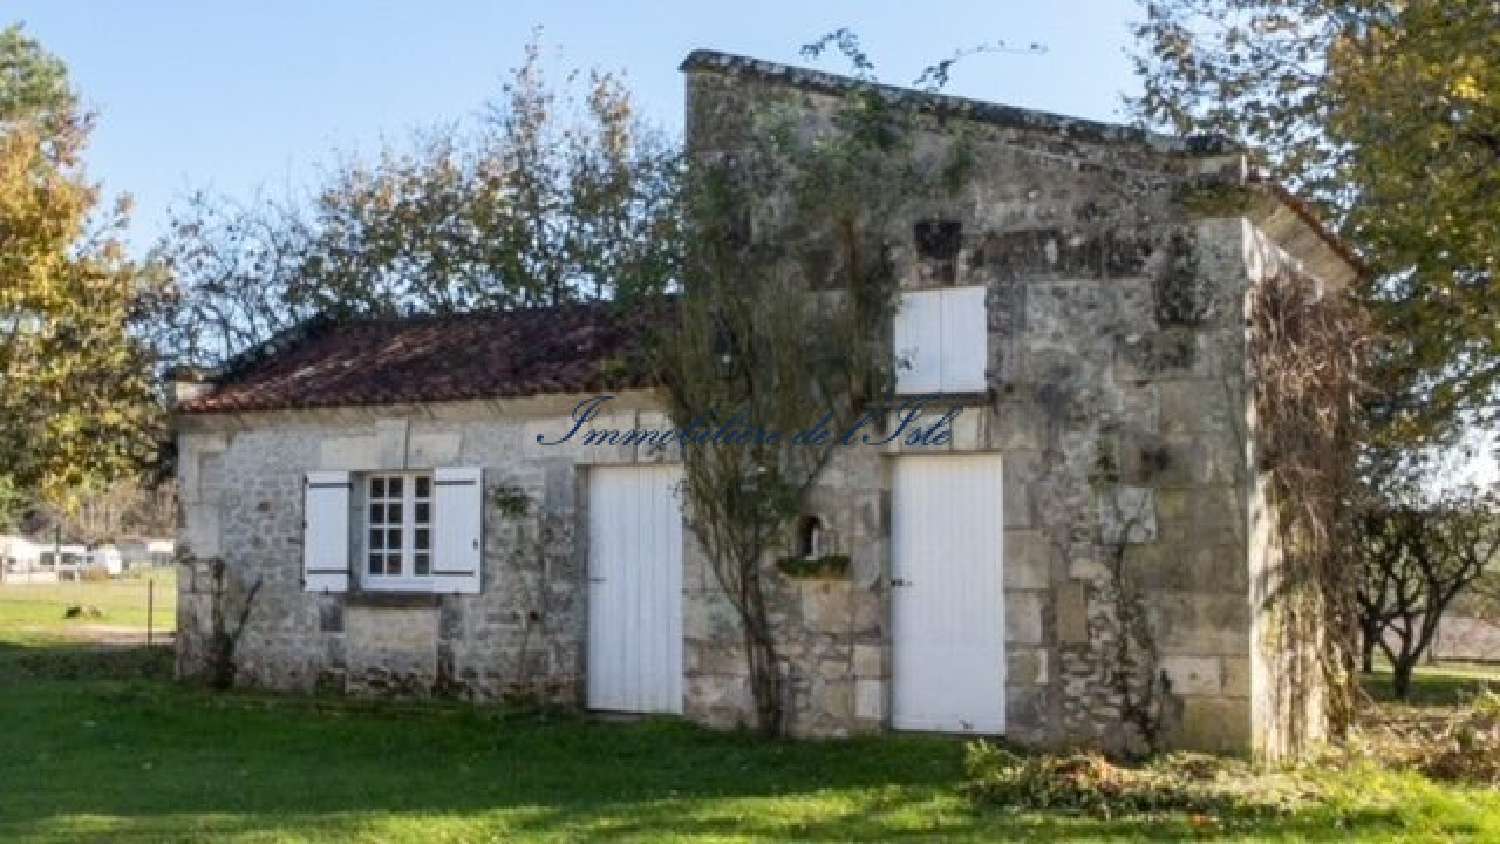  à vendre maison Rudeau-Ladosse Dordogne 4